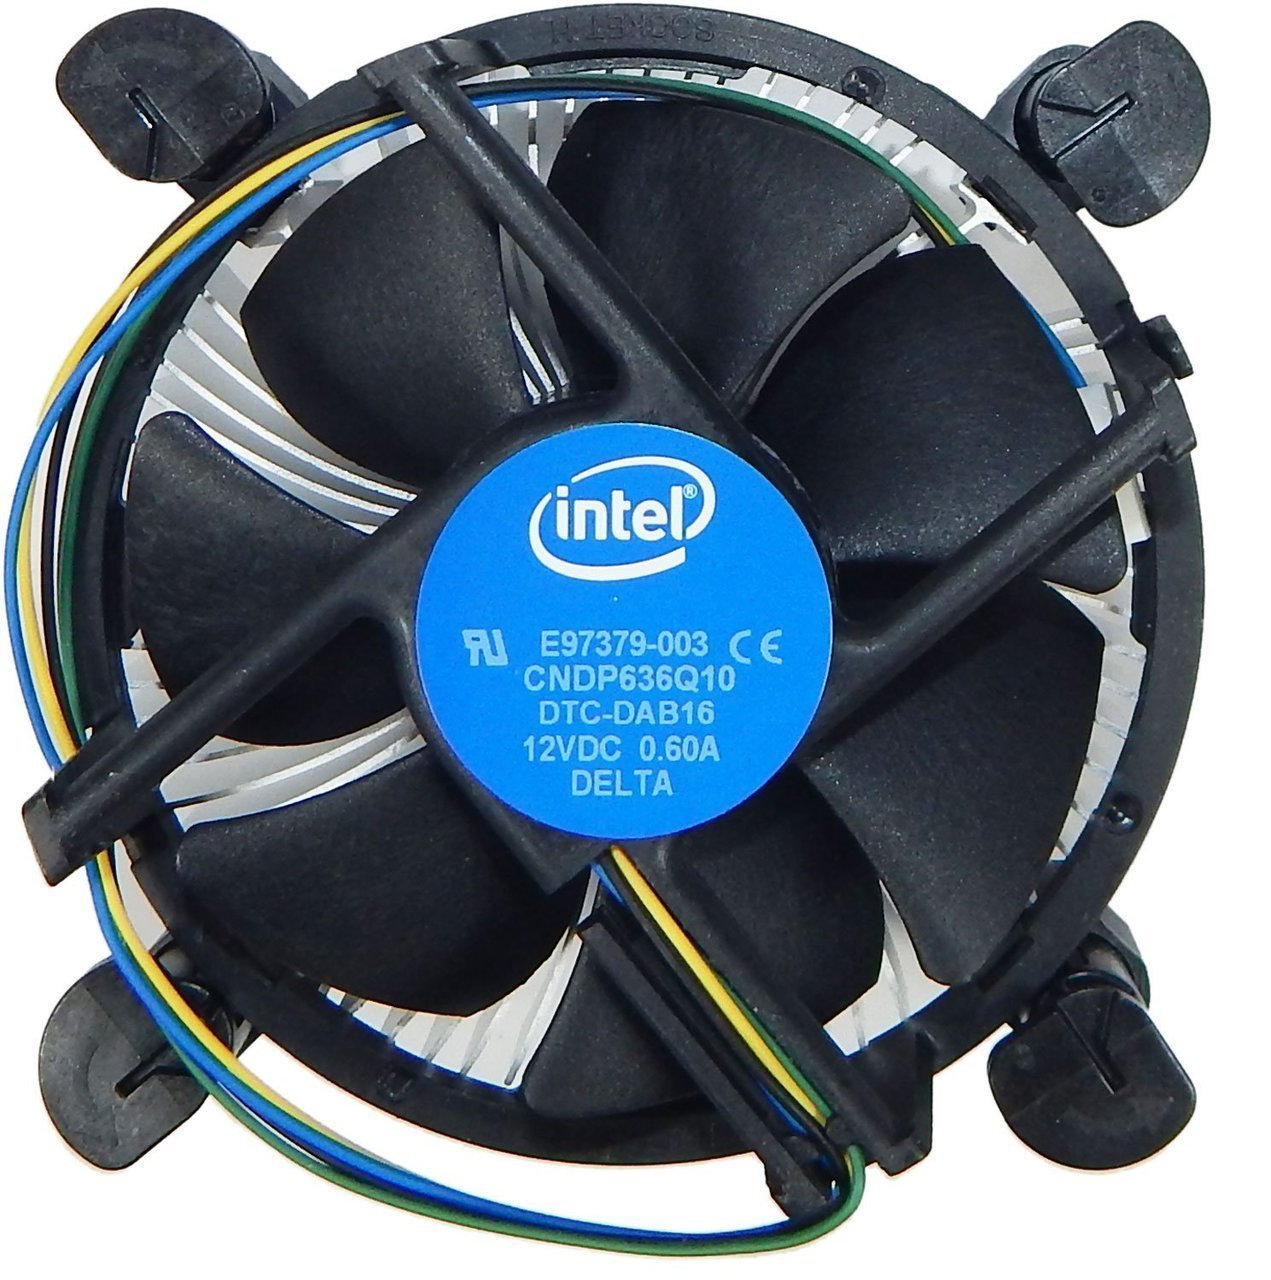 Intel - VENTILO INTEL E97379-001 POUR FAB POUR SOCKET 1150-1151-1155  (Reservé uniquement pour montage) - Ventirad Processeur - Rue du Commerce